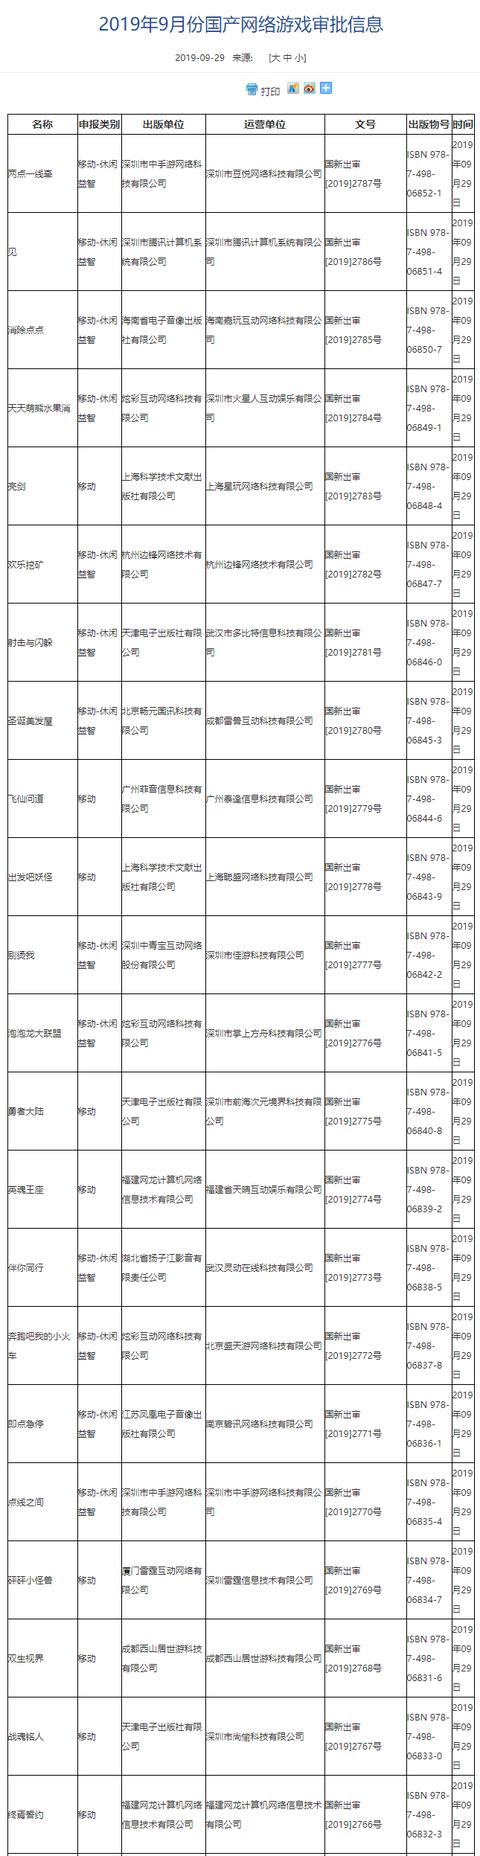 广电9月最新国产网游版号更新新增22款手游